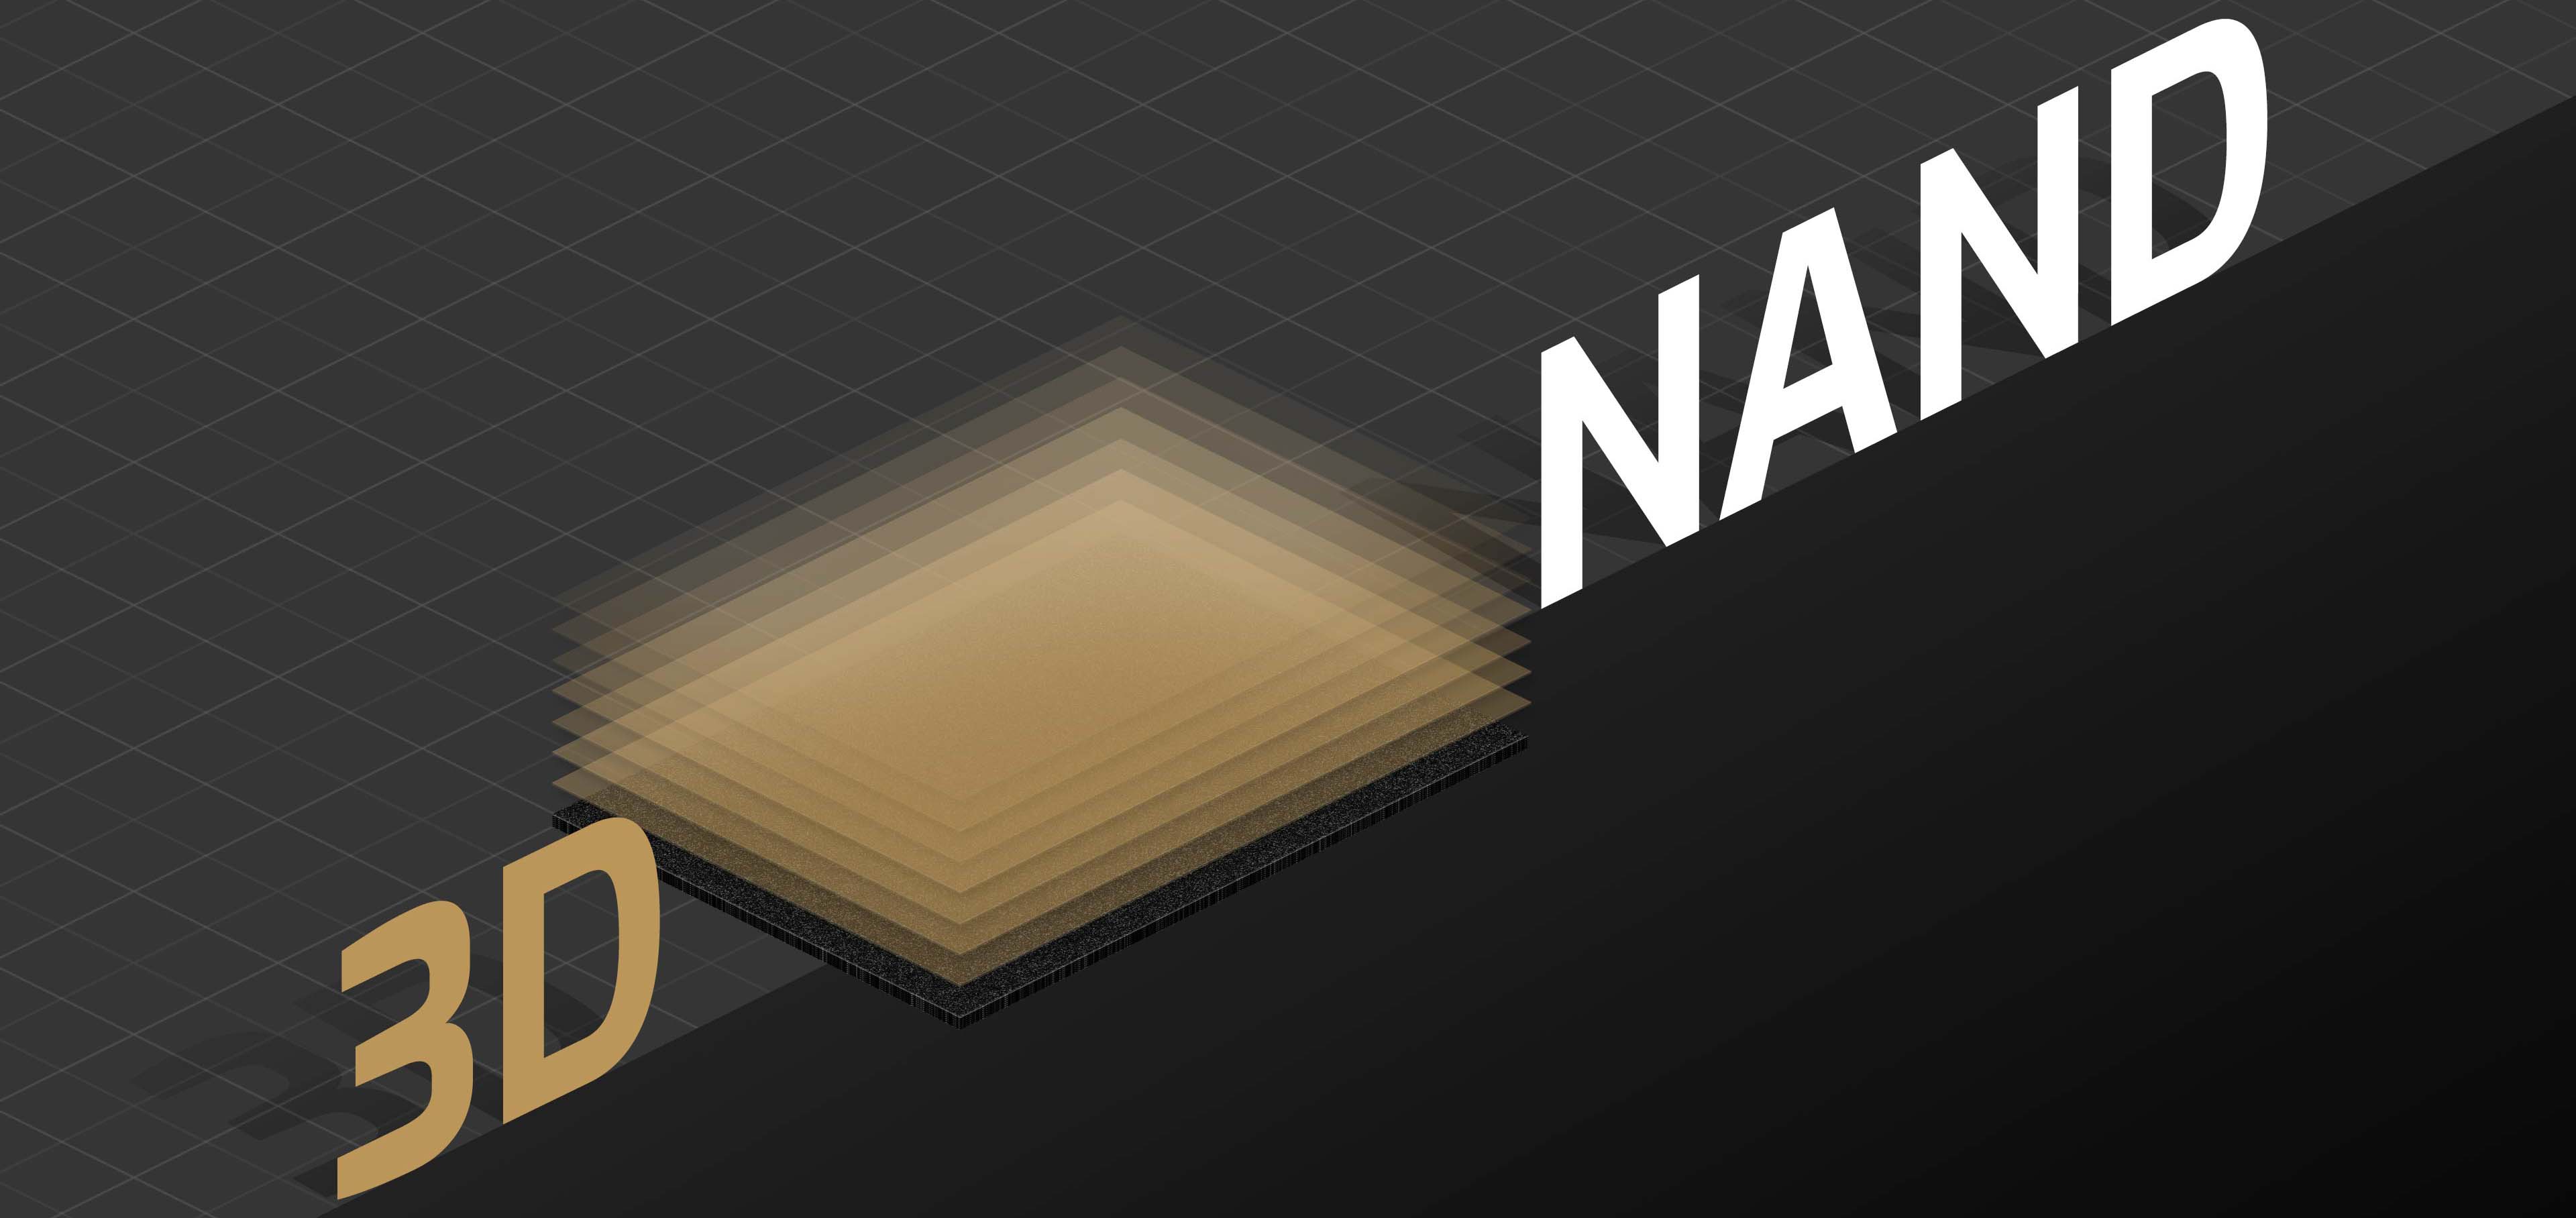  Chip nhớ 3D NAND tiên tiến